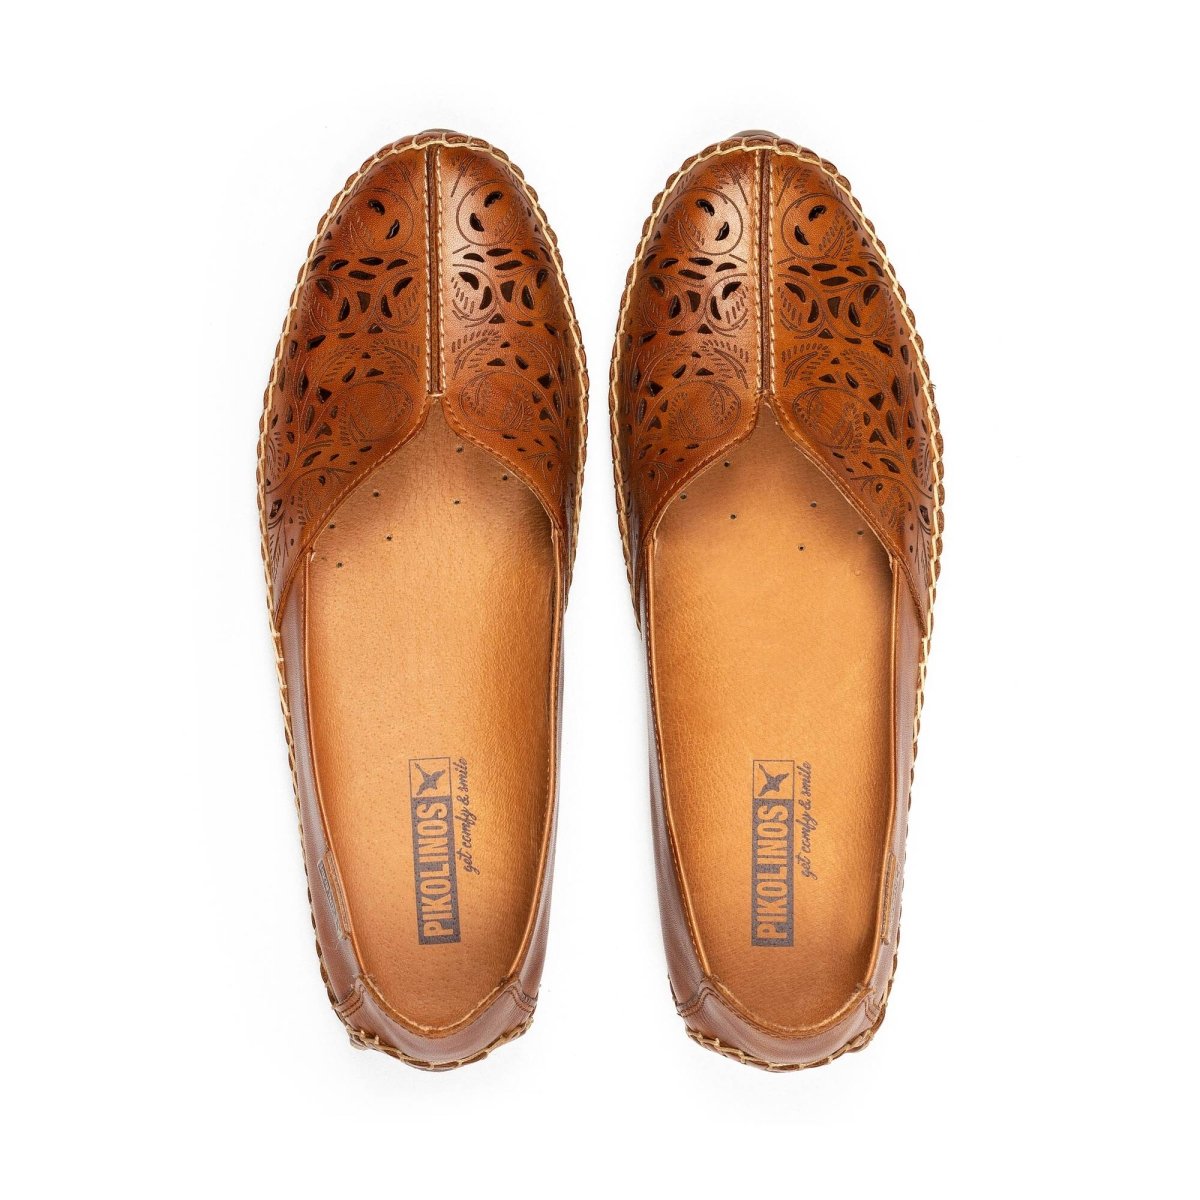 PIKOLINOS JEREZ 578-4976 WOMEN'S LOAFERS SLIP-ON SLIPPER SHOES IN BRANDY - TLW Shoes